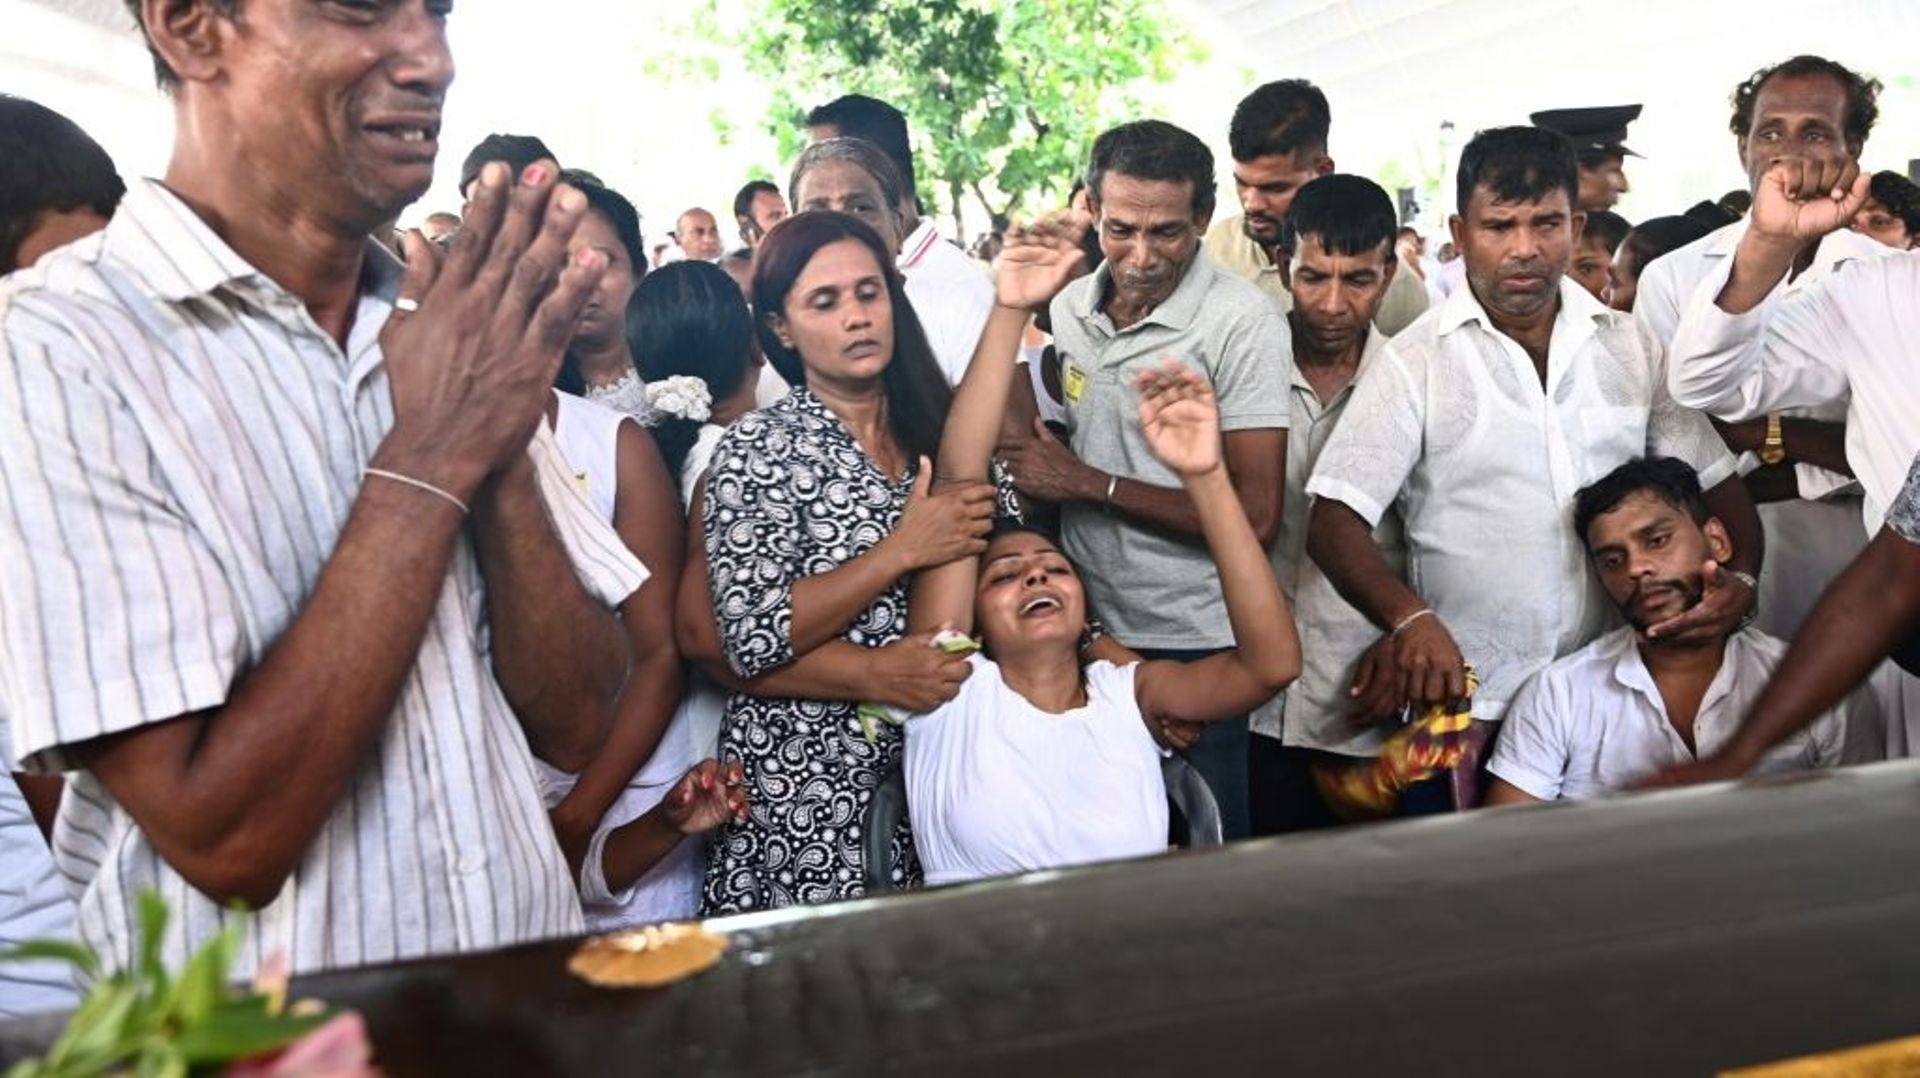 Des proches pleurent devant le cercueil d'une victime des attentats lors de funérailles à l'église Saint-Sébastien de Negombo au Sri Lanka, le 23 avril 2019